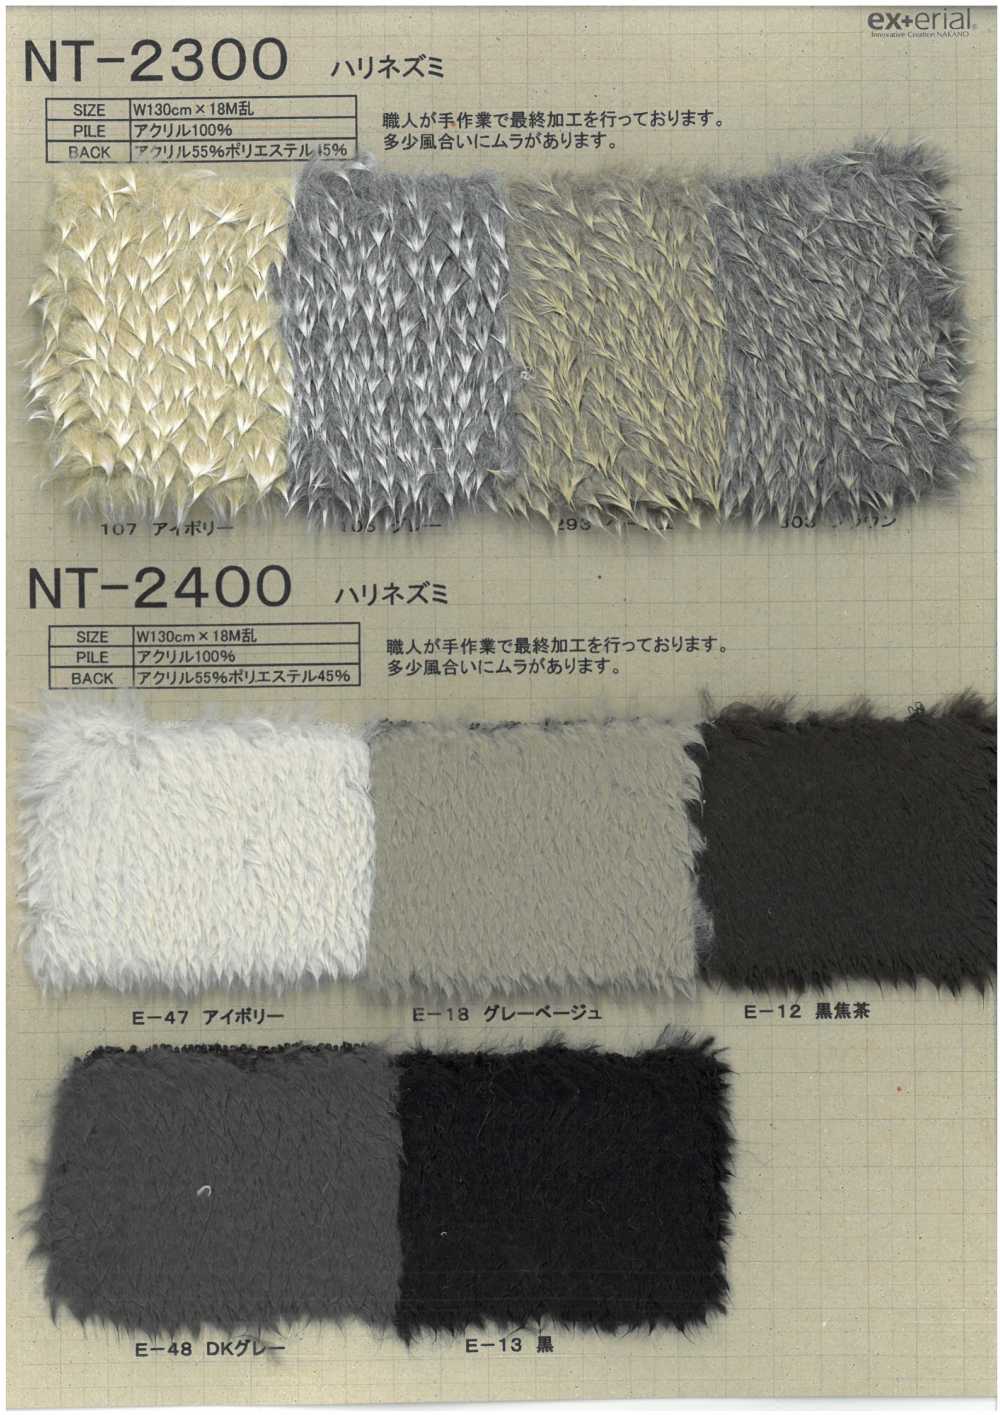 NT-2300 Piel Artesanal [erizo][Fabrica Textil] Industria De La Media Nakano